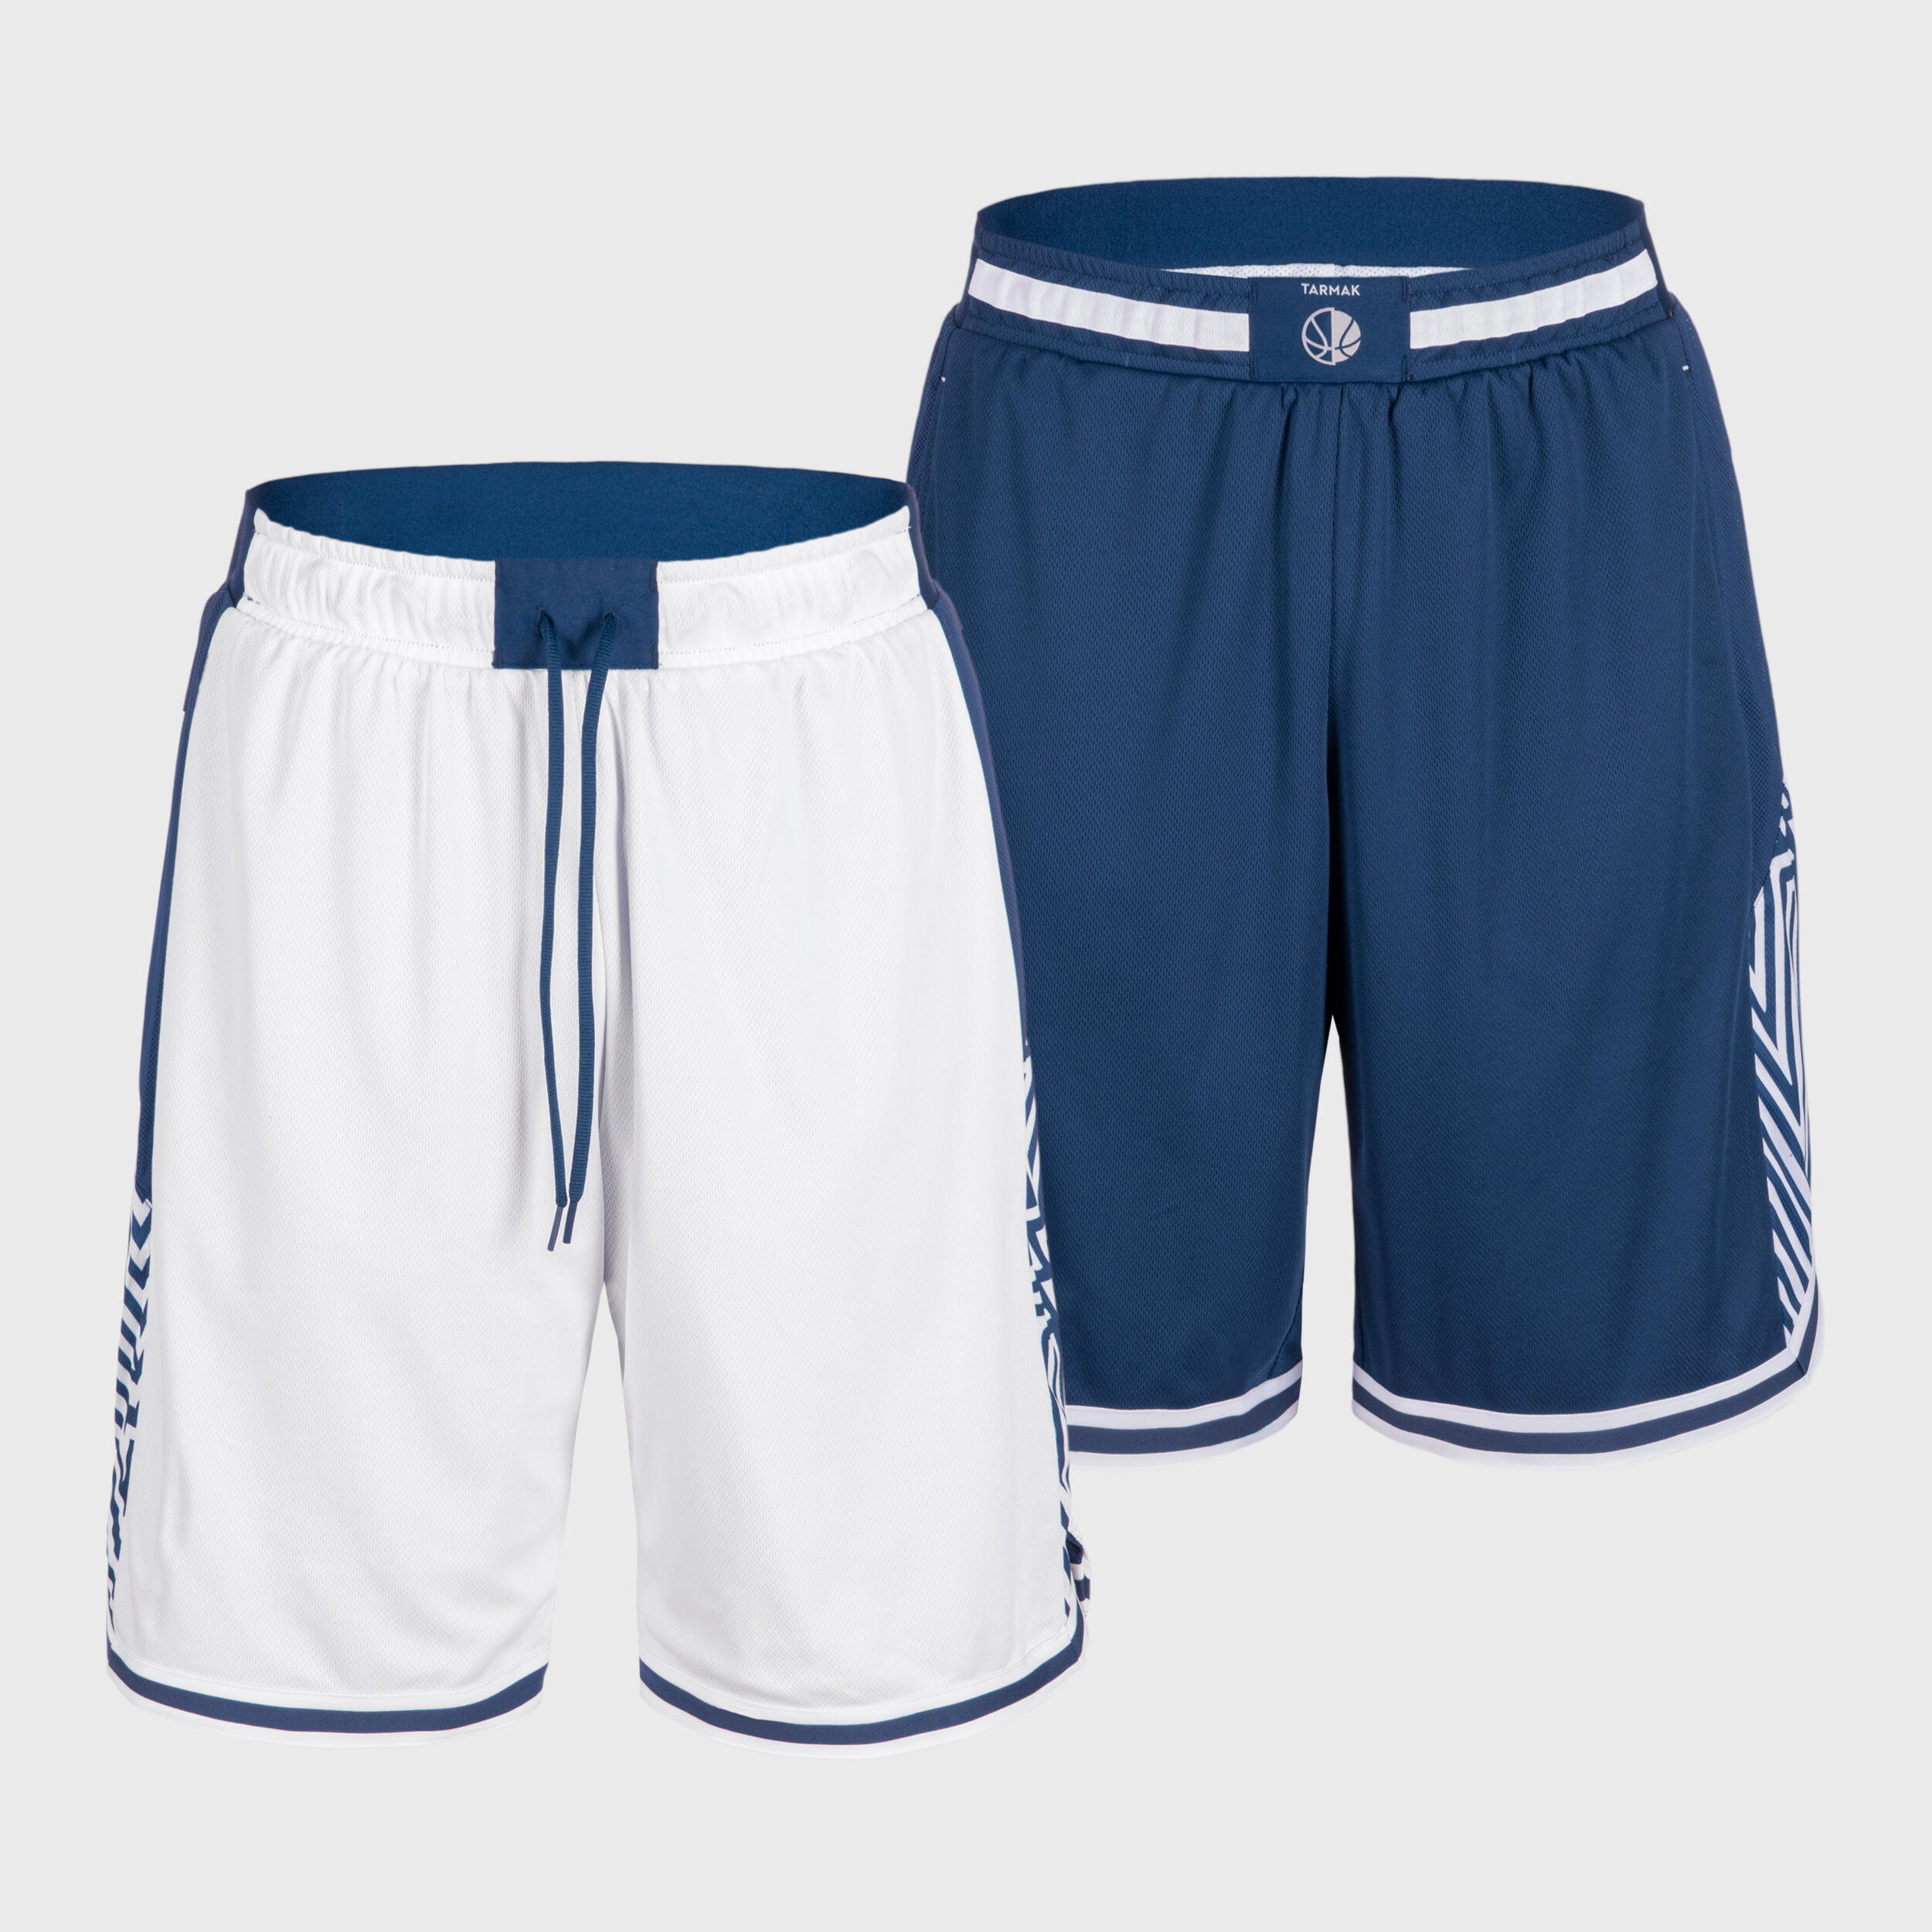 Men's/Women's Reversible Basketball Shorts SH500R - White/Navy 1/6